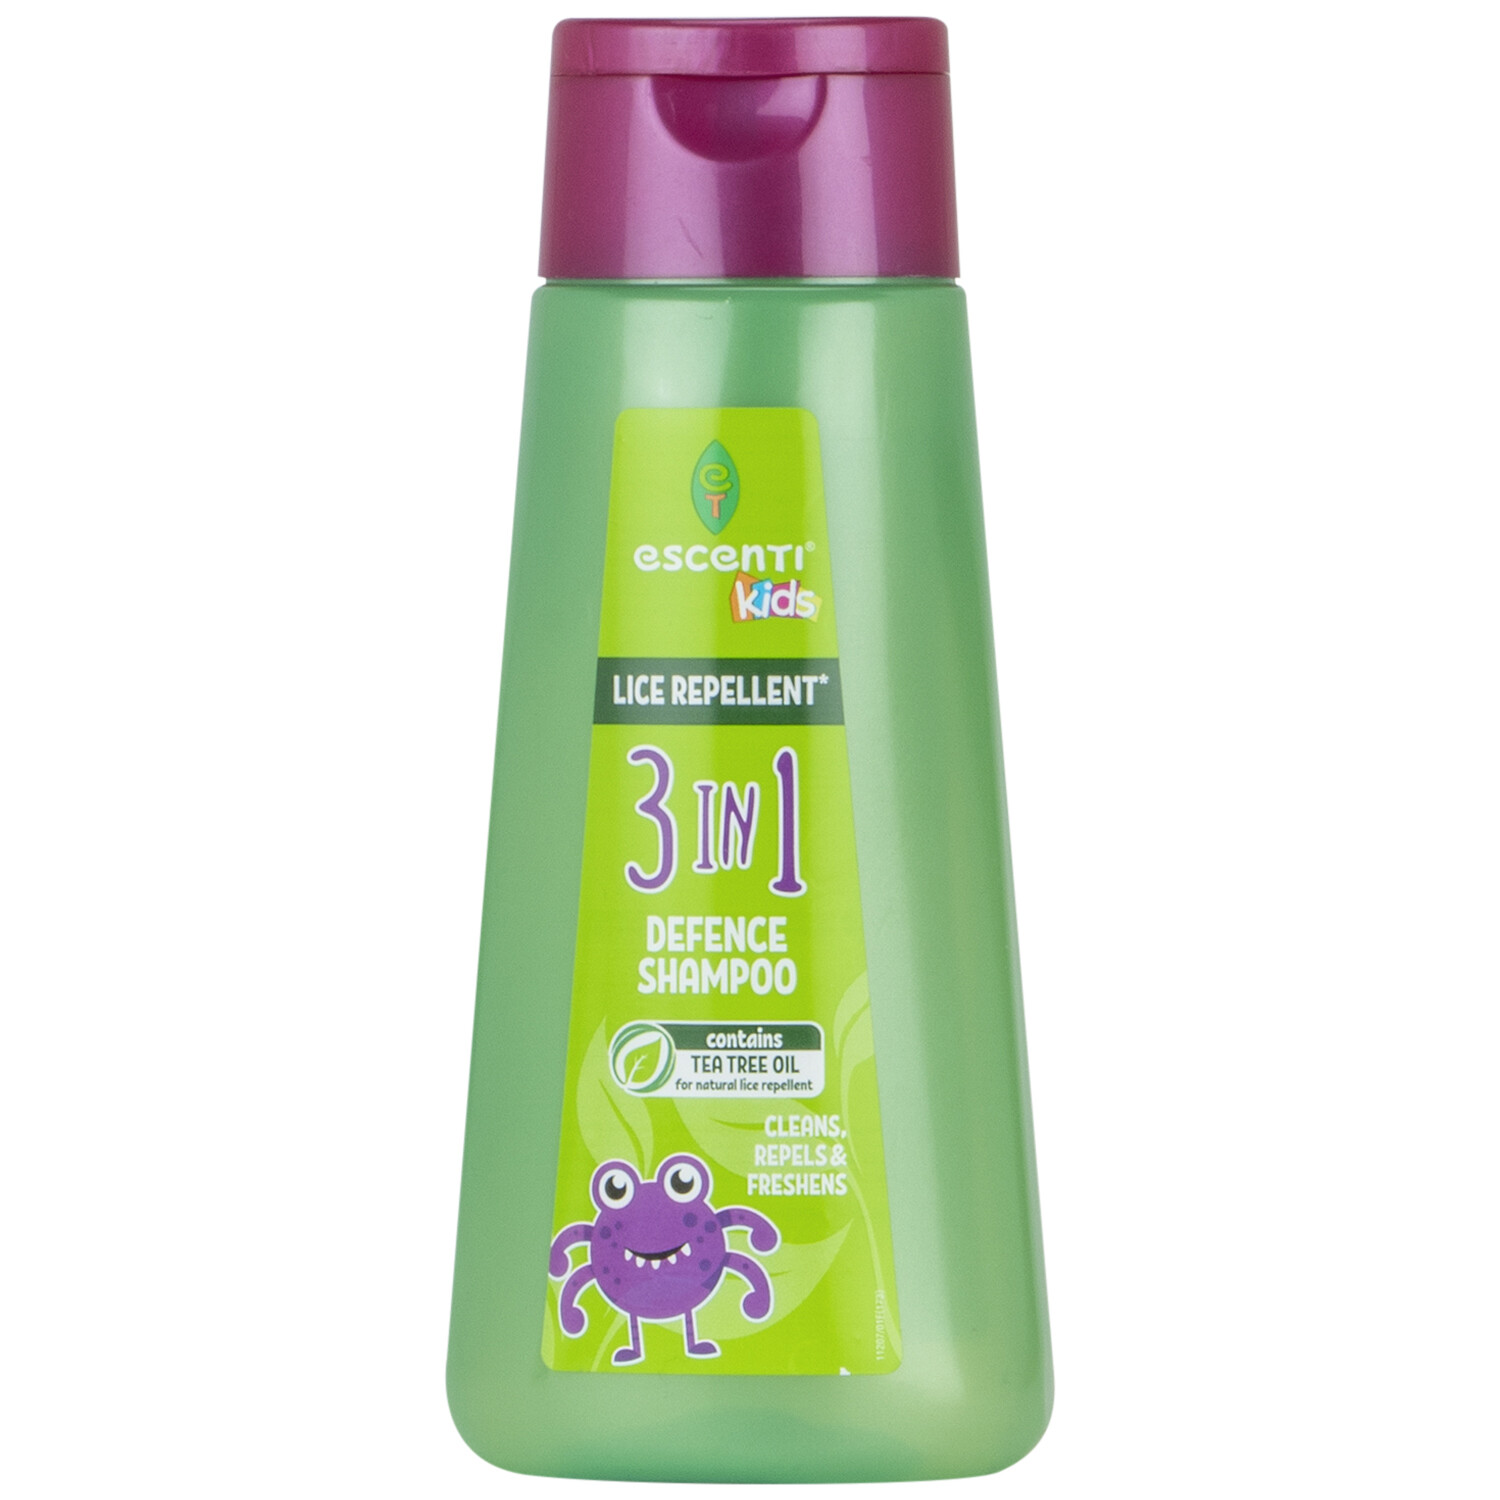 Escenti Lice Repellent Shampoo Image